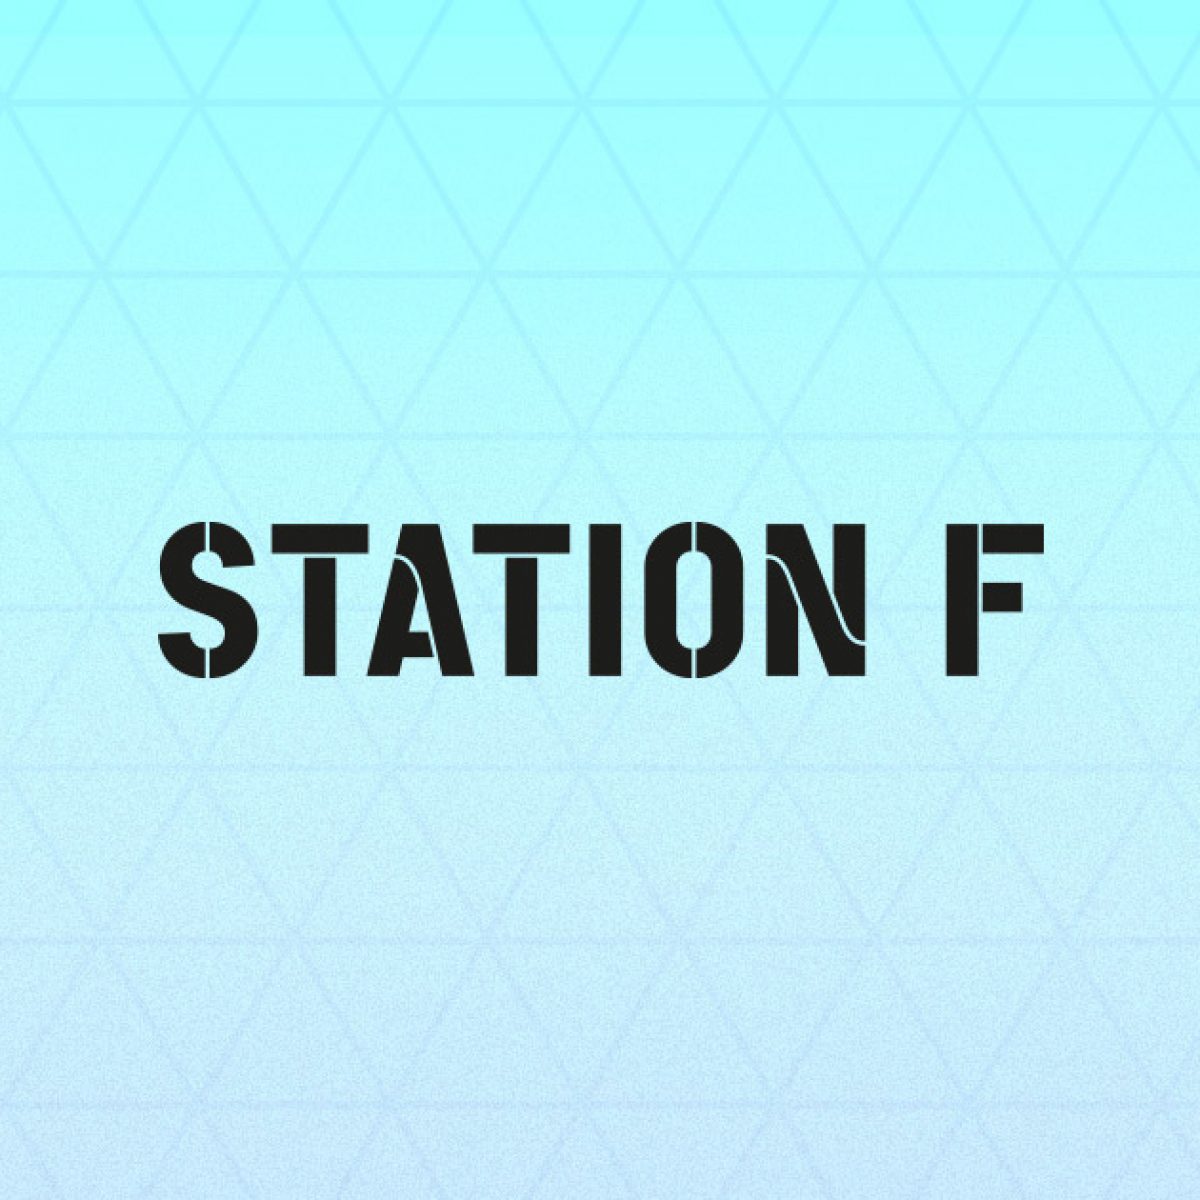 L’inauguration de Station F commence : suivez-la en direct sur Univers Freebox